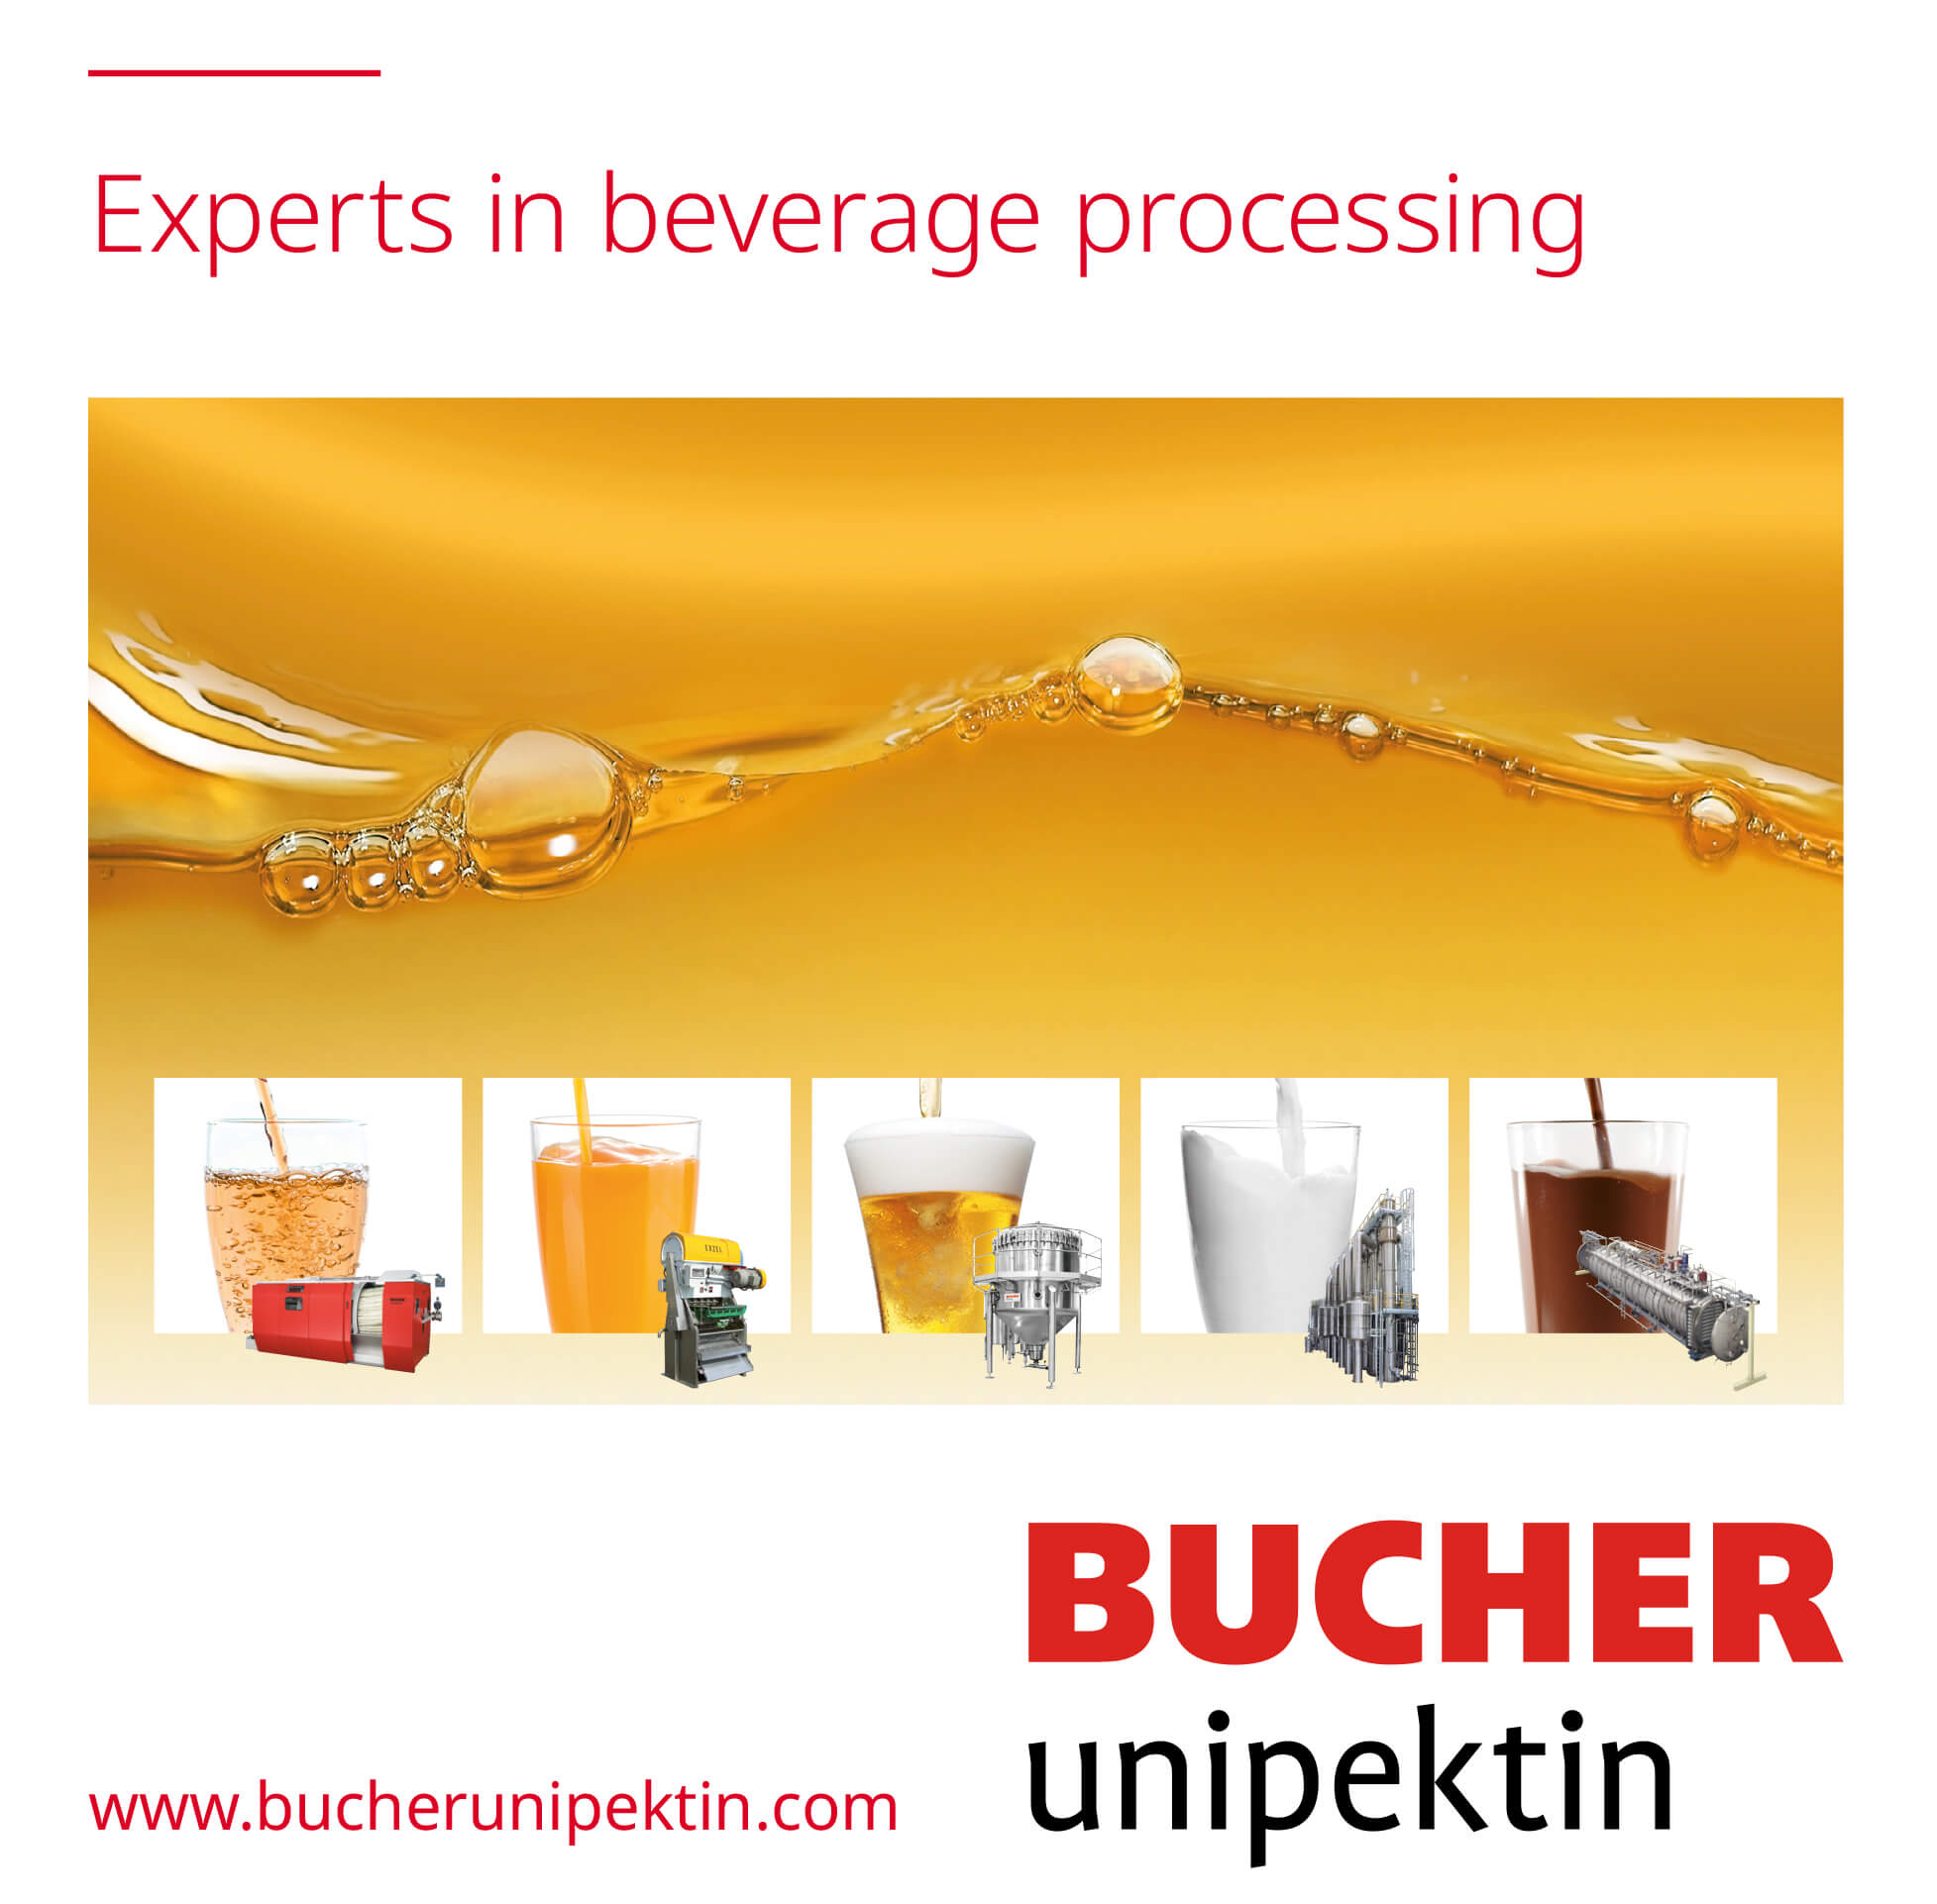 Bucher Unipektin - Experts in beverage processing